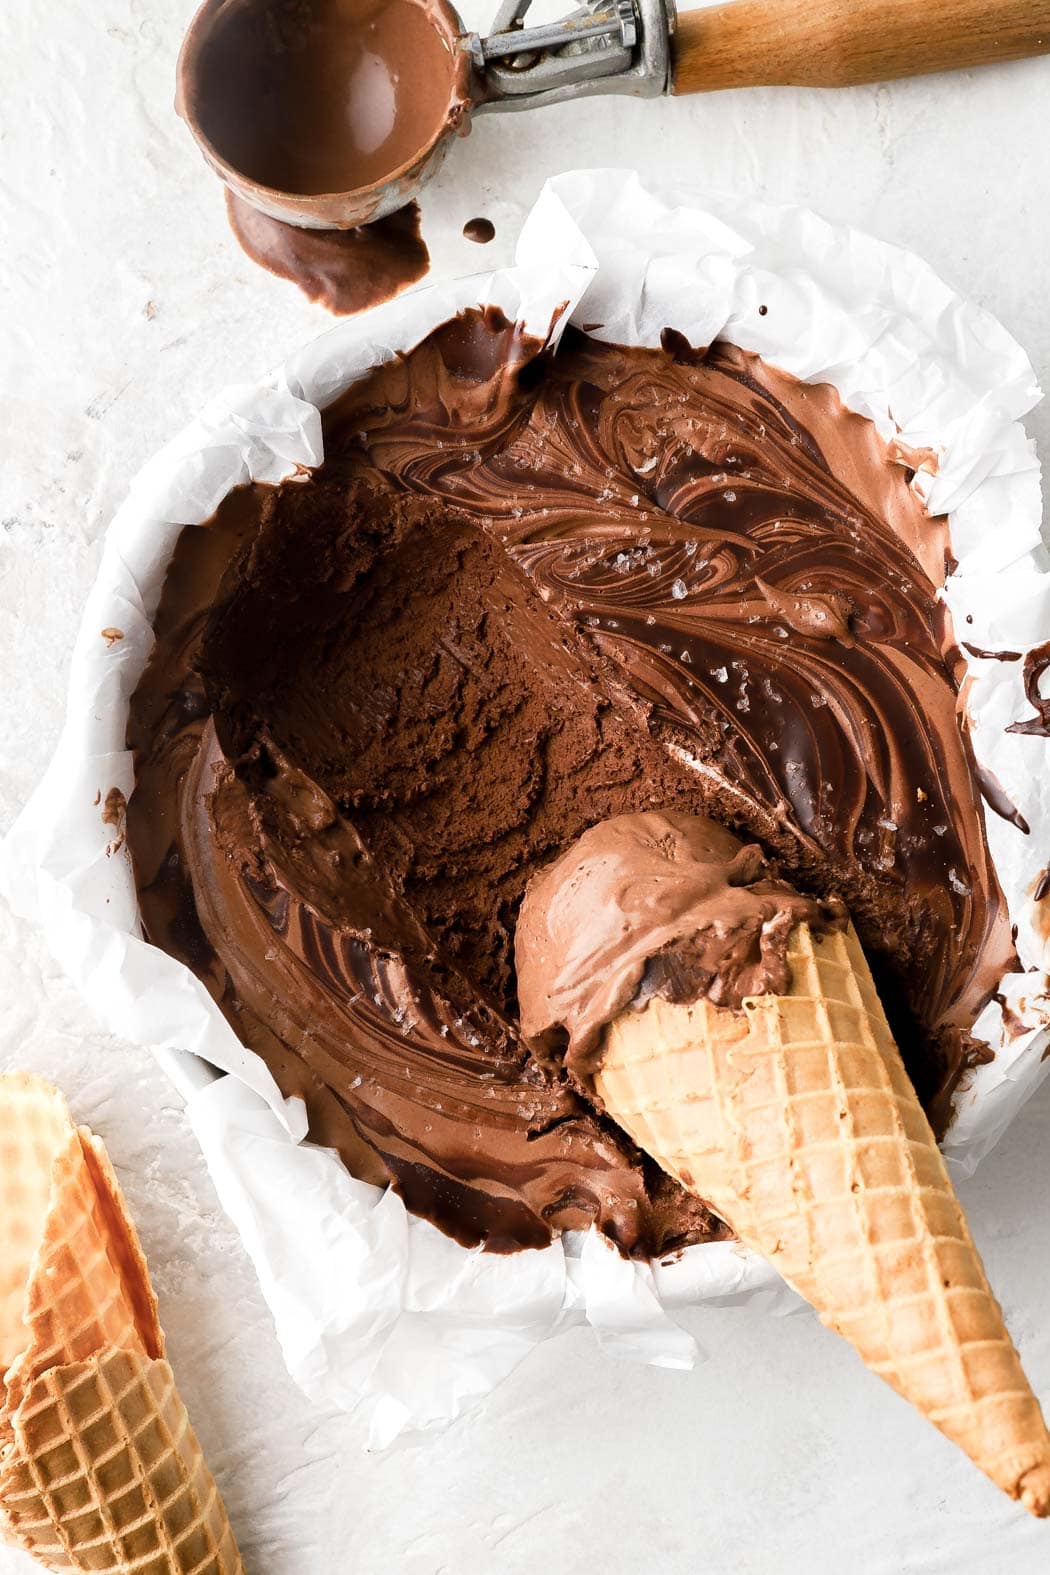 dark chocolate ice cream